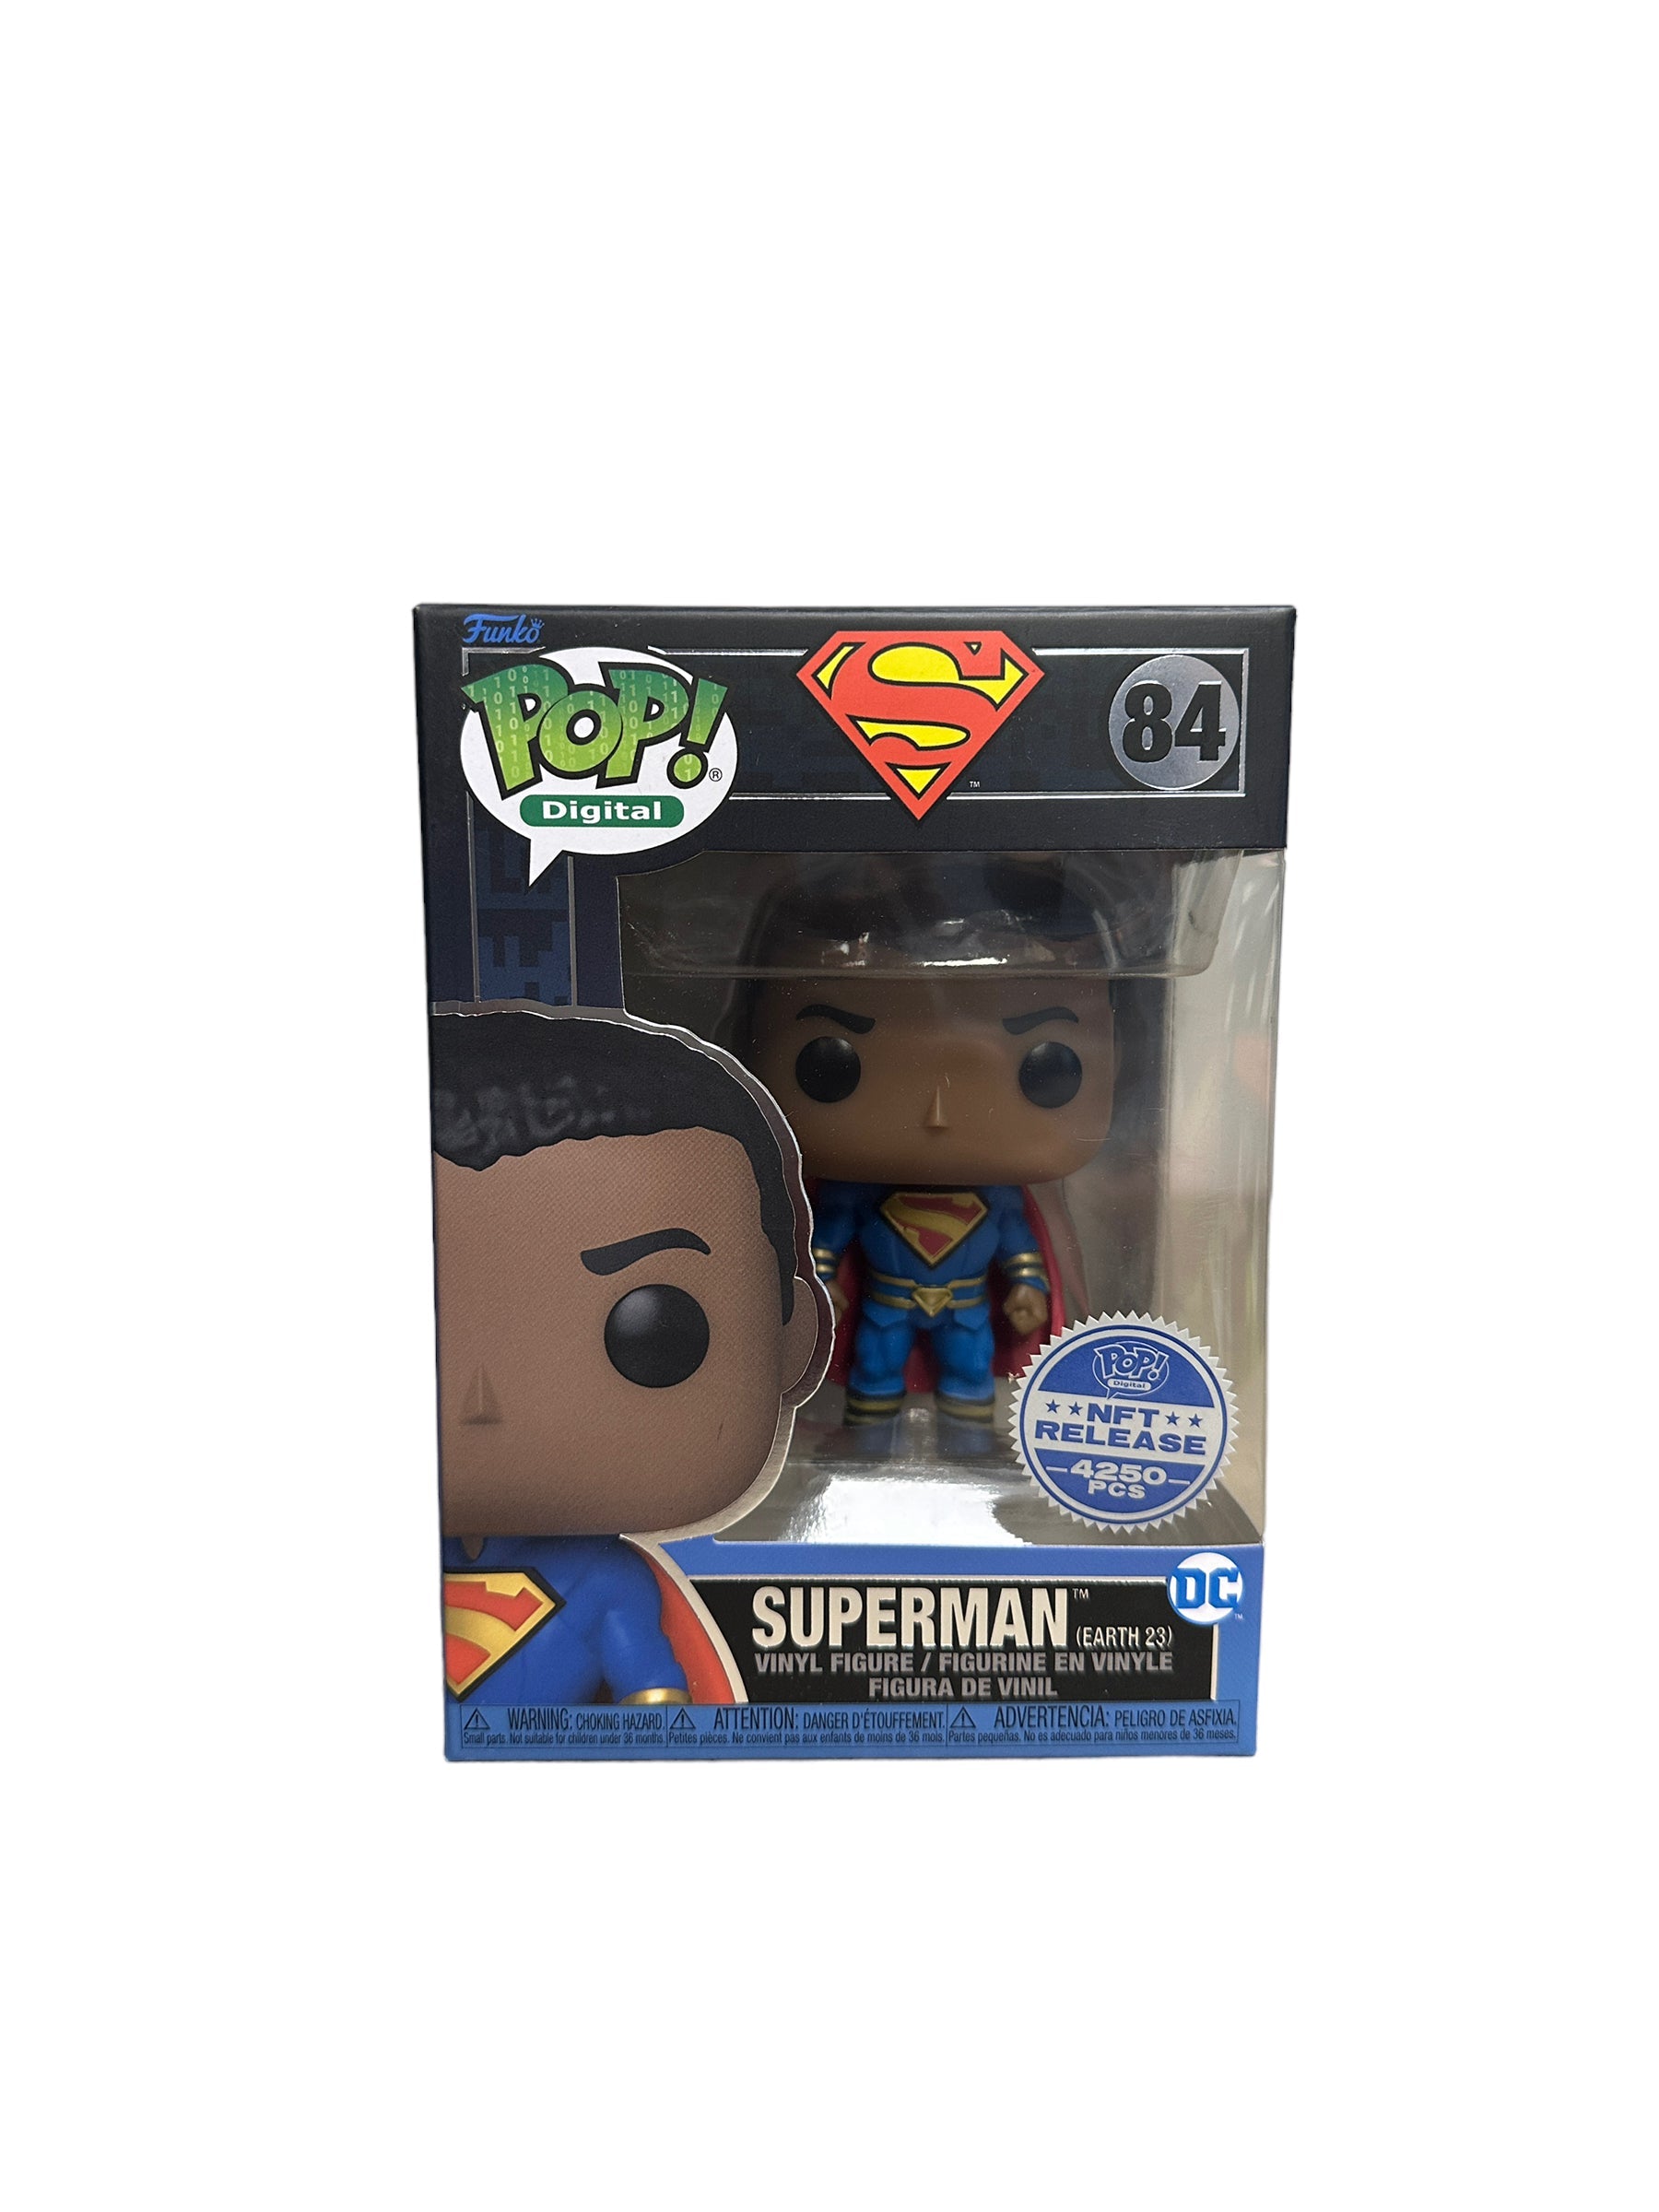 Superman (Earth 23) #84 Funko Pop! - Superman - NFT Release Exclusive LE4250 Pcs - Condition 9.5/10